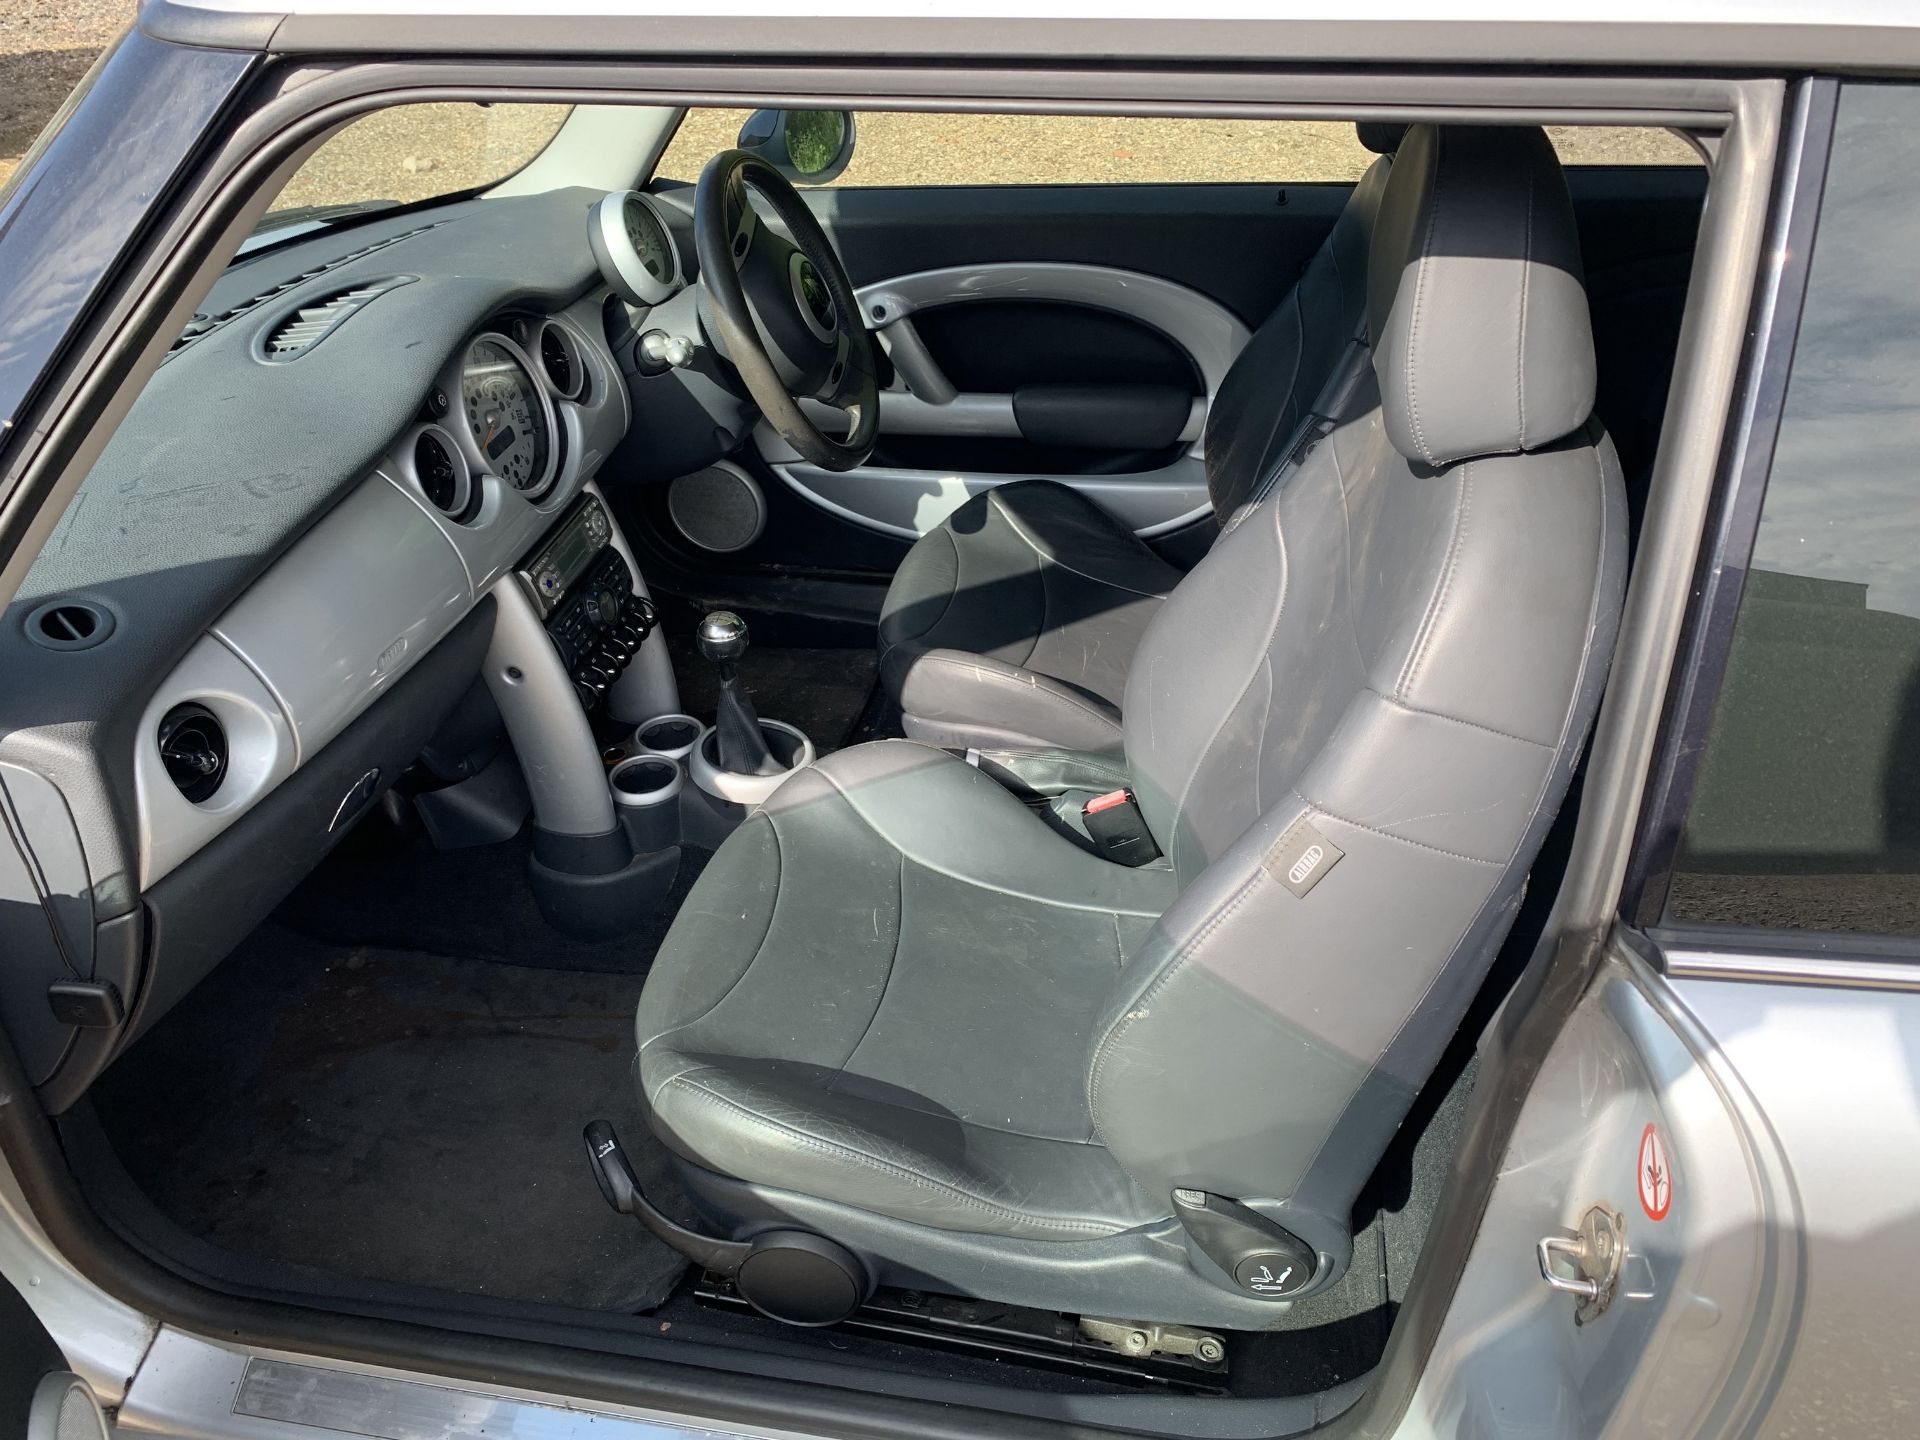 Mini Cooper S car, YX52 AHJ, 74,000 miles, 1.6l petrol, 7 months MOT, V5, 2 keys, NO VAT - Image 6 of 7